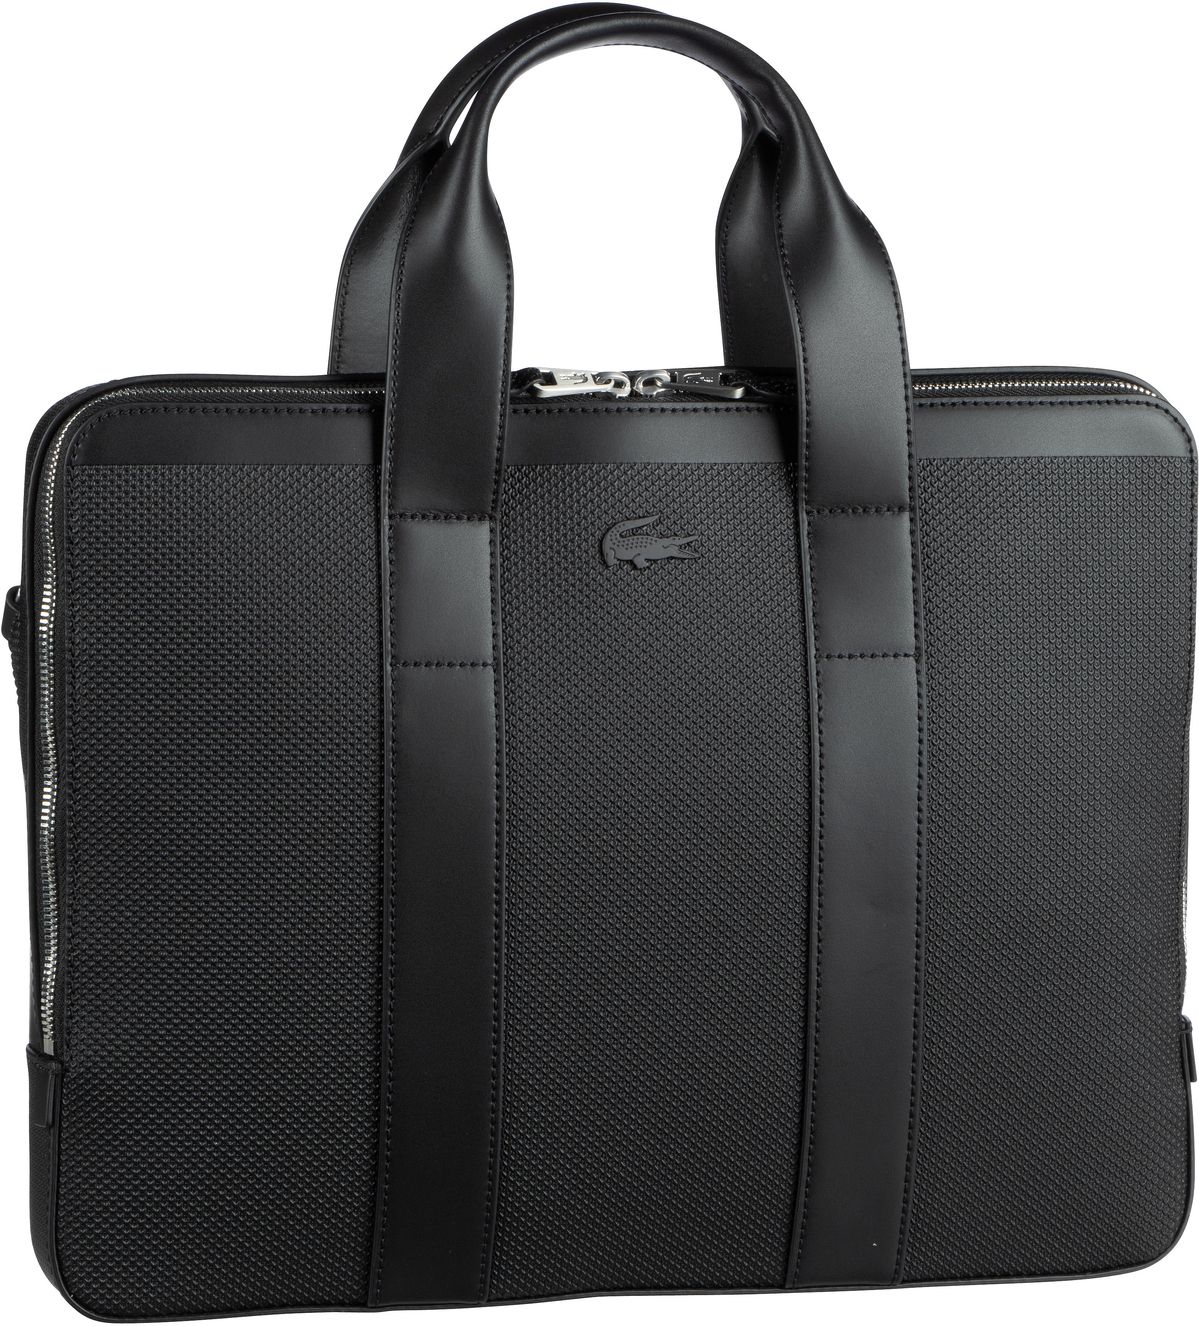 Lacoste Chantaco Computer Bag Slim - Black